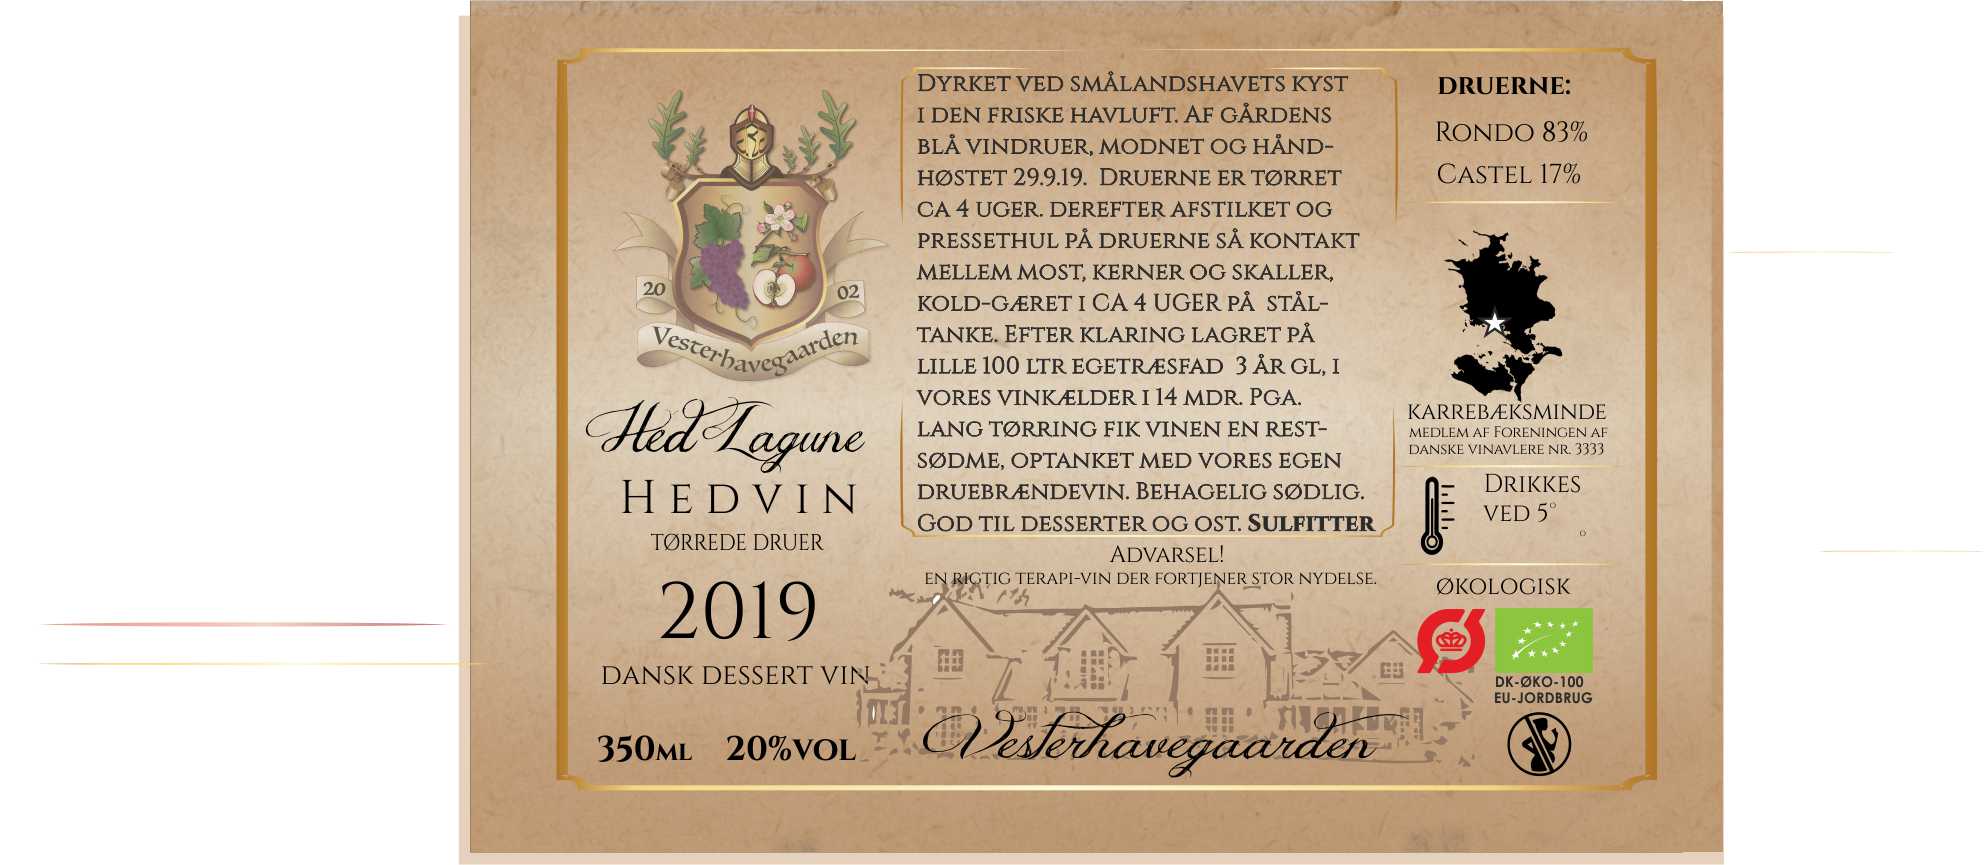 HEDVIN (PORTVIN) 2019, 350ml, 20% fadlagret